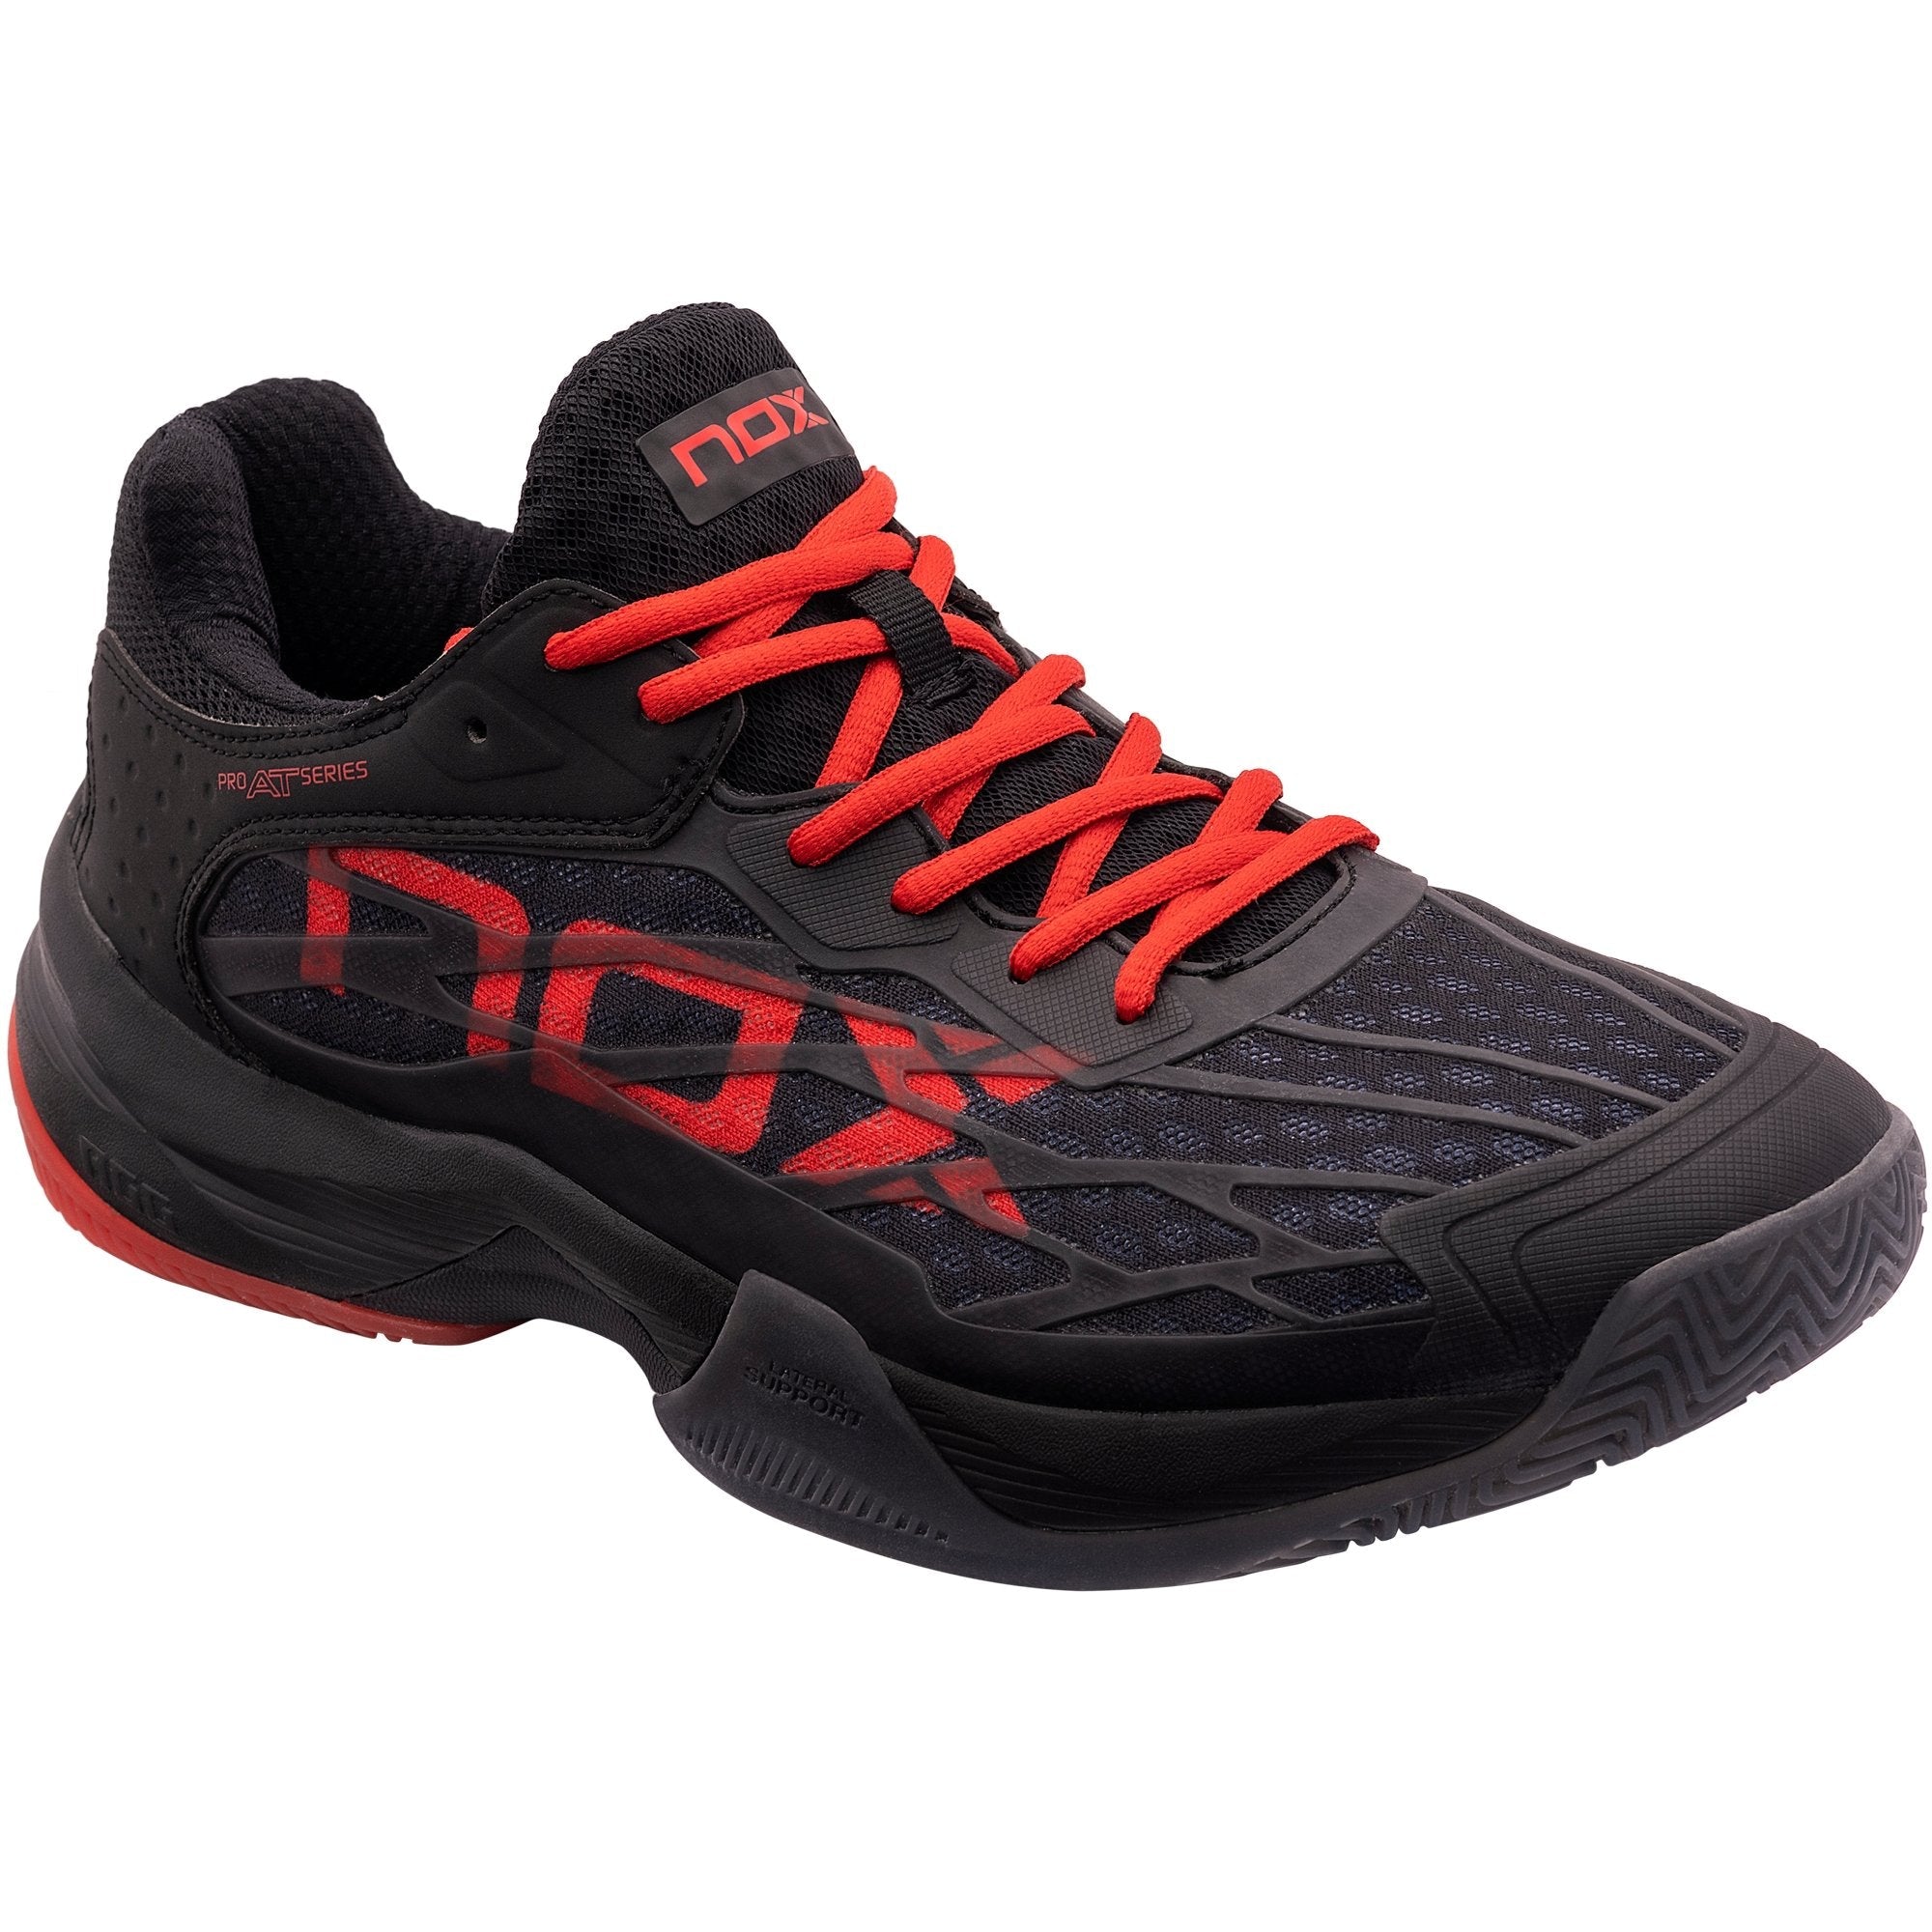 Zapatillas de pádel Nox AT10 LUX Negro/Rojo - NOX